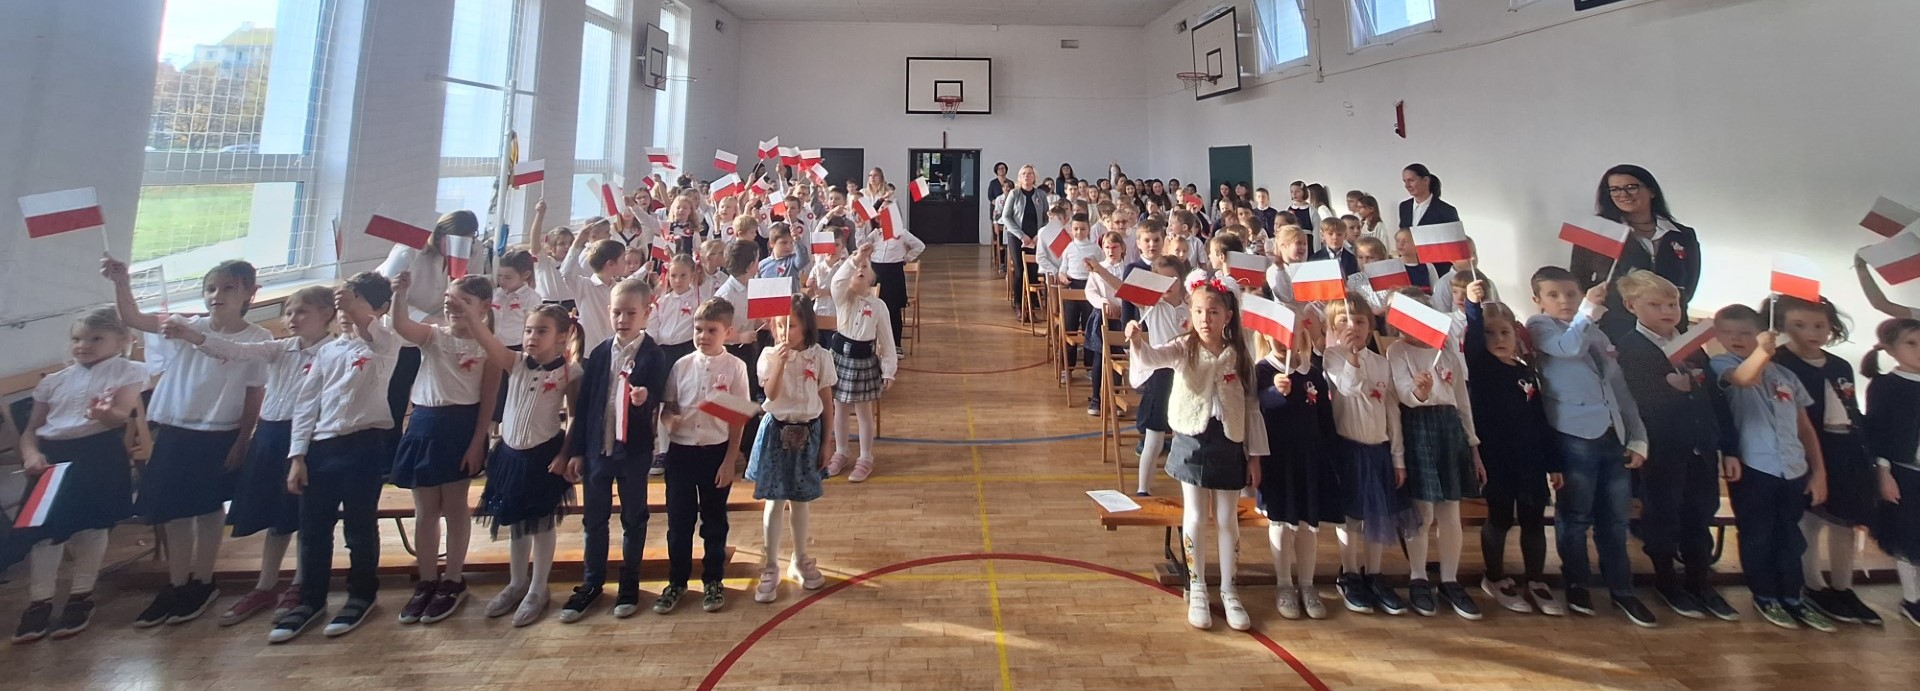 Na sali gimnastycznej stoi w rzędach kilkadziesiąt ubranych na galowo dzieci. Niektóre z nich trzymają podniesione w górę małe flagi Polski.